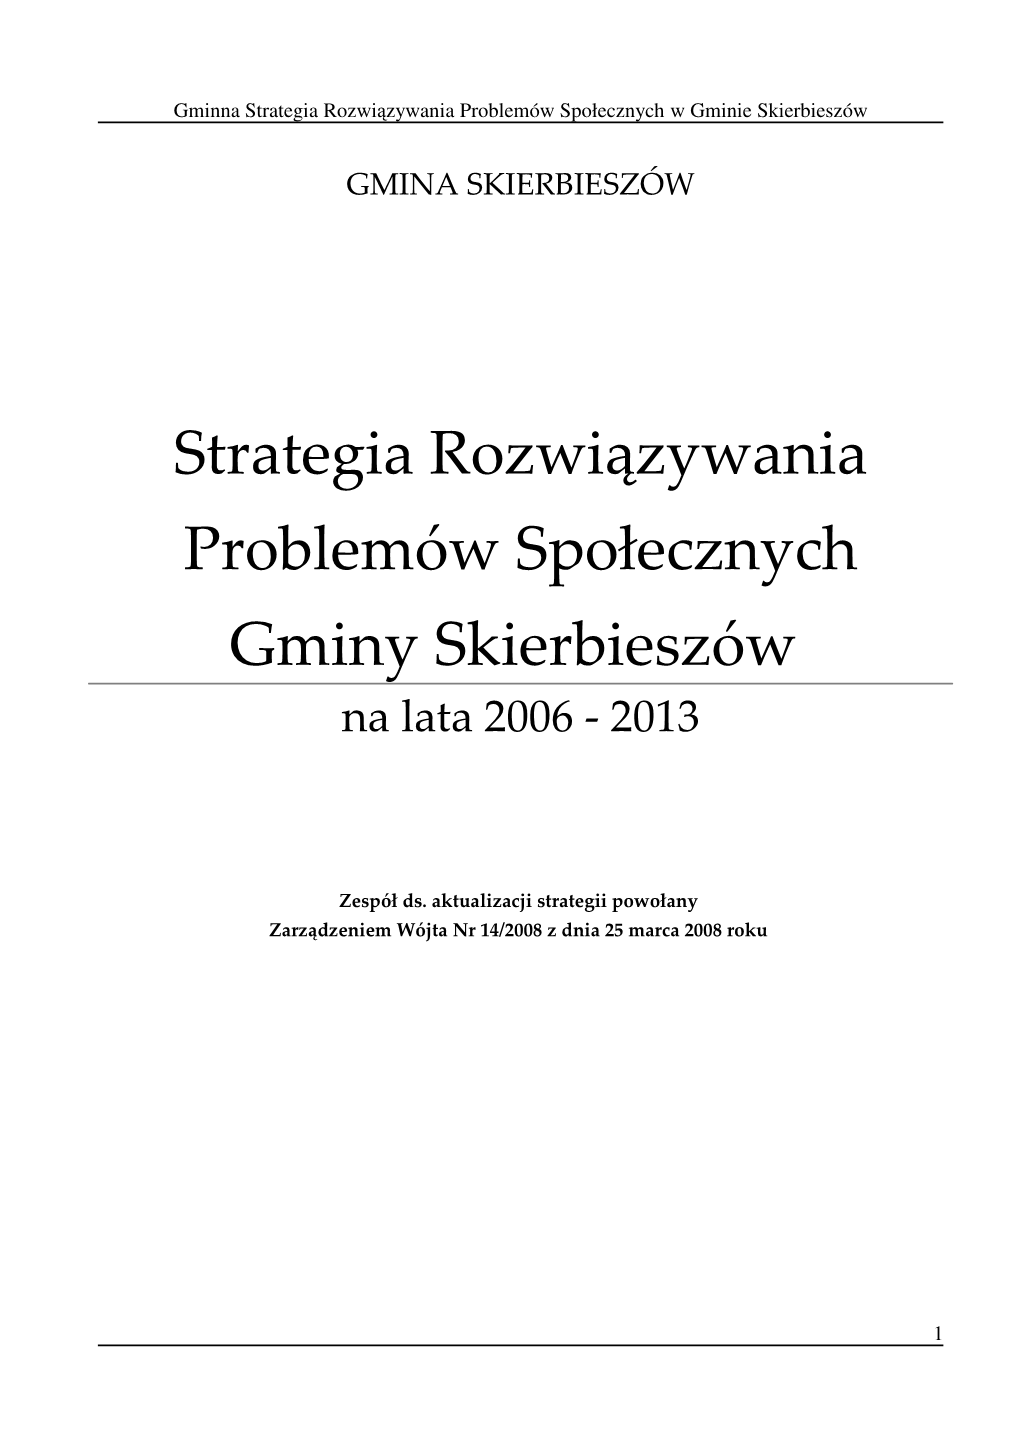 Strategia Rozwiązywania Problemów Społecznych Gminy Skierbieszów Na Lata 2006 - 2013